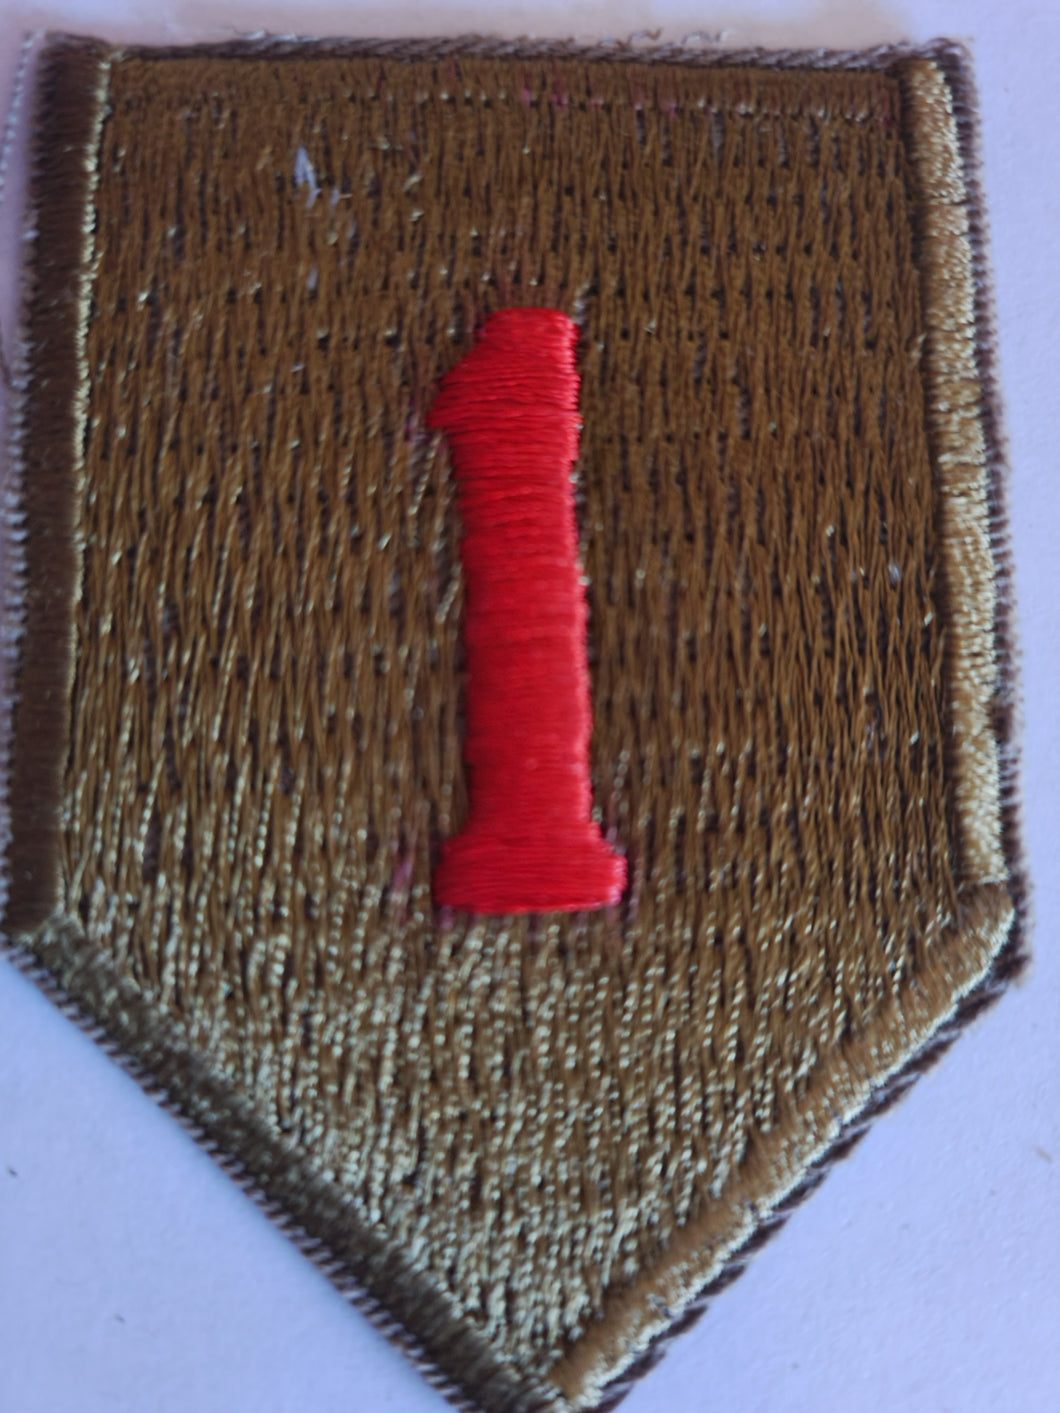 WW11/Vietnam era 1st Infantry(big red one) patch